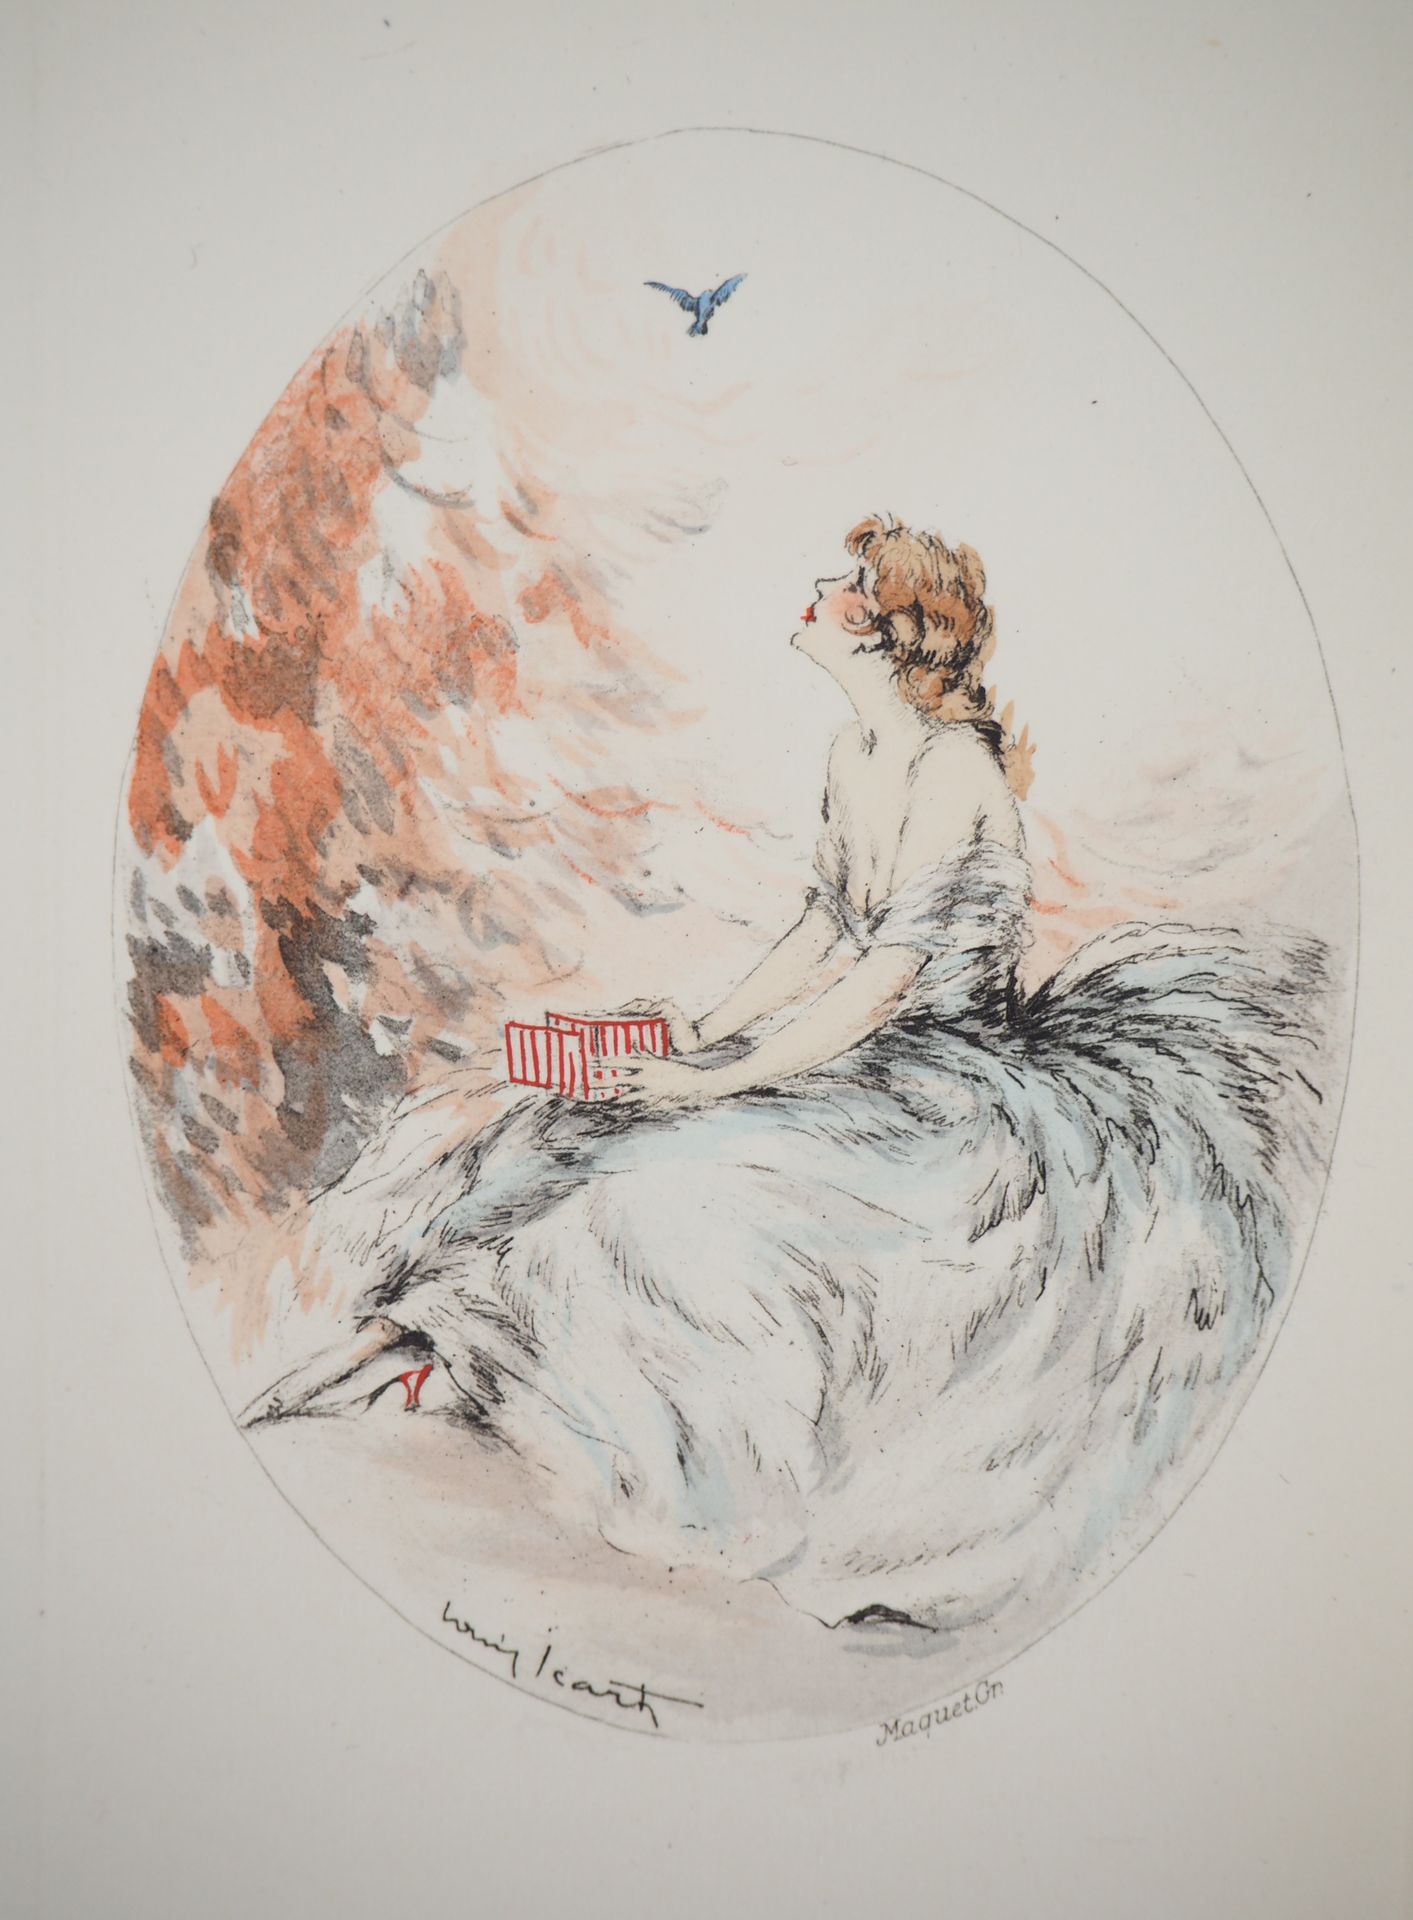 Louis ICART Louis ICART (1888 - 1950)

La joven y el pájaro liberado

Grabado or&hellip;